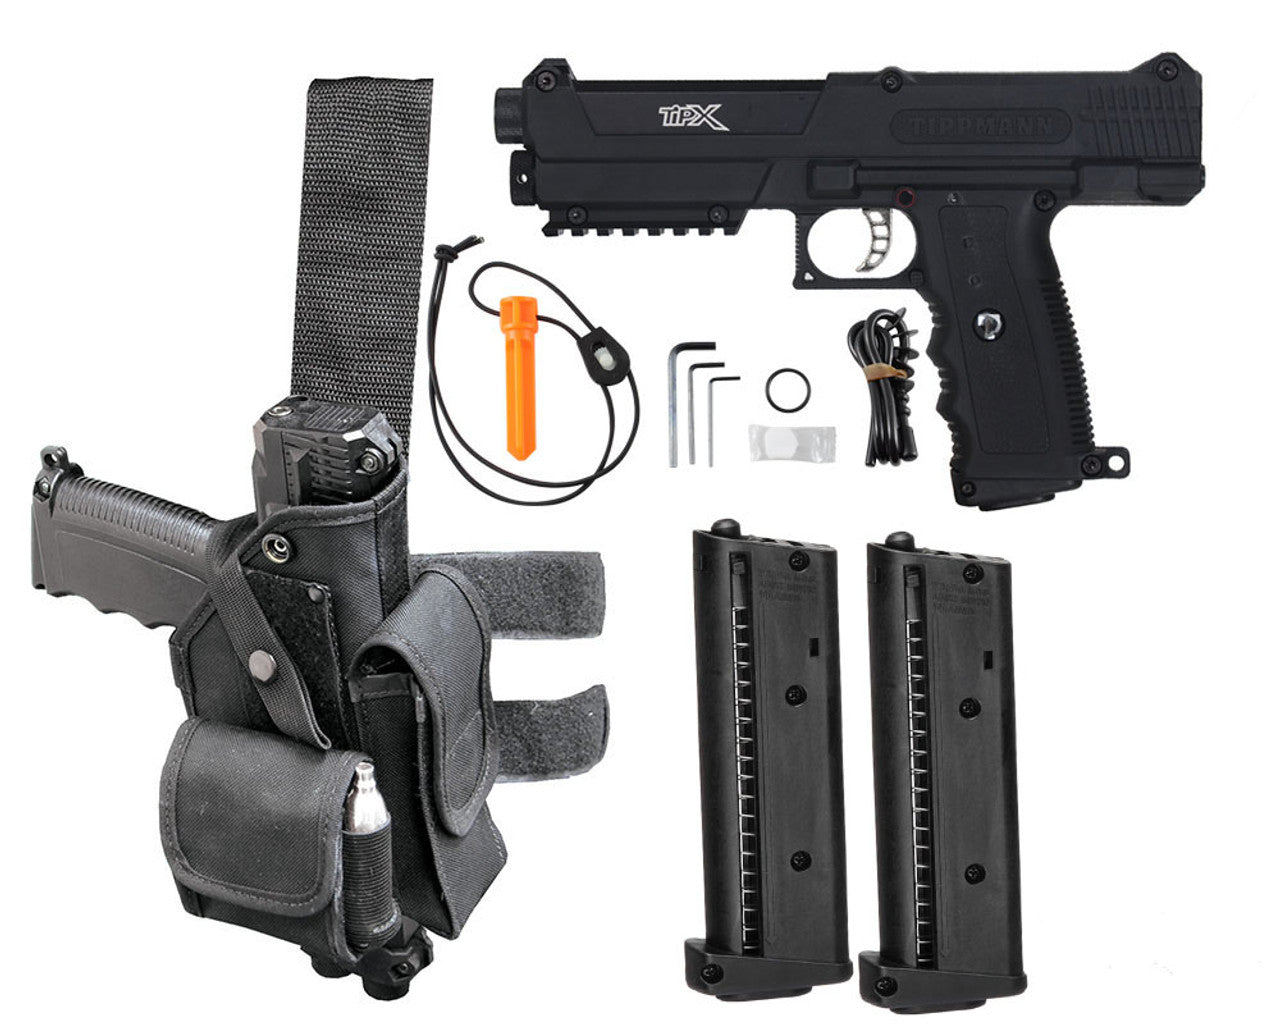 Tippmann Tipx Deluxe Pistol Kit | Shop Paintball Gun Marker